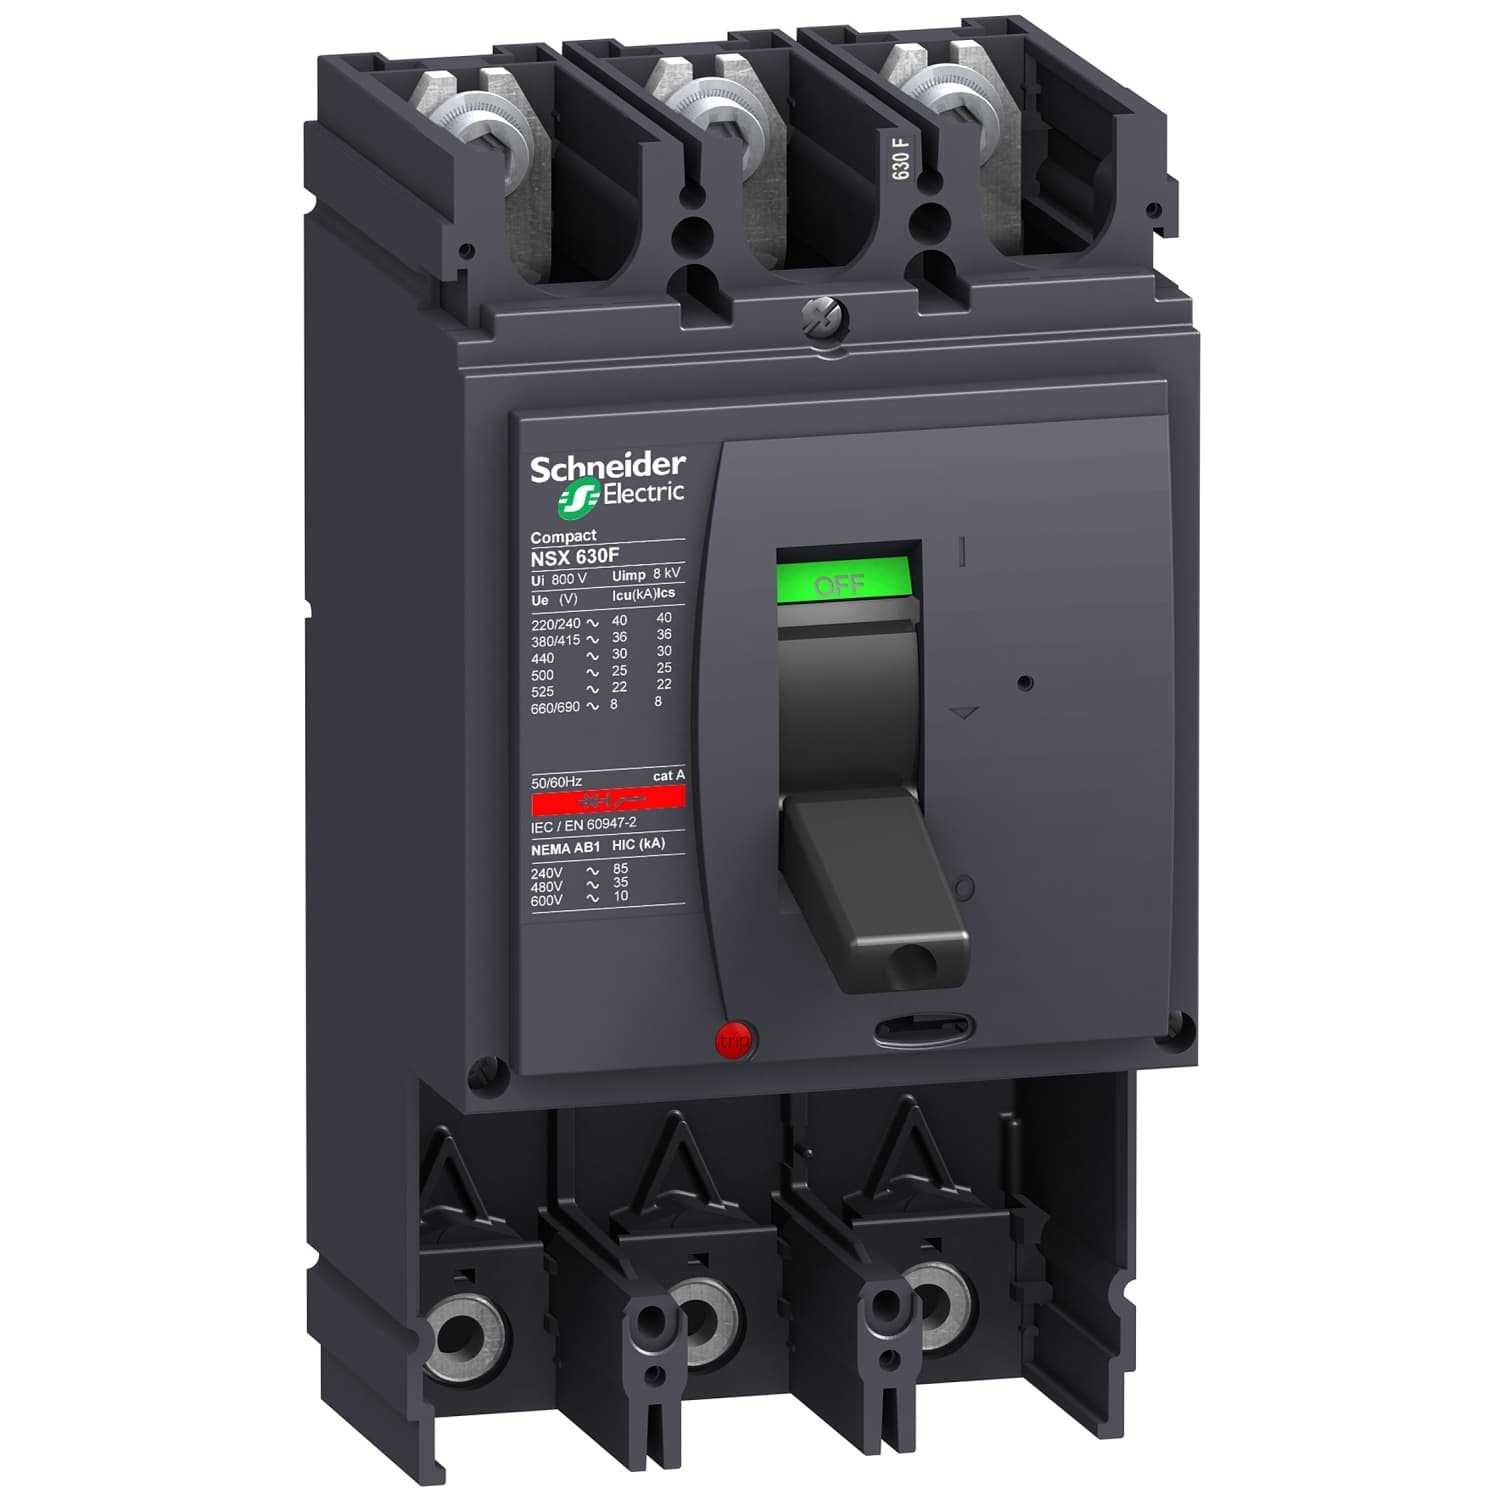 Caja de interruptor automático Compact NSX630H 3 polos, 690Vca, poder de corte: 65kA en 480Vca